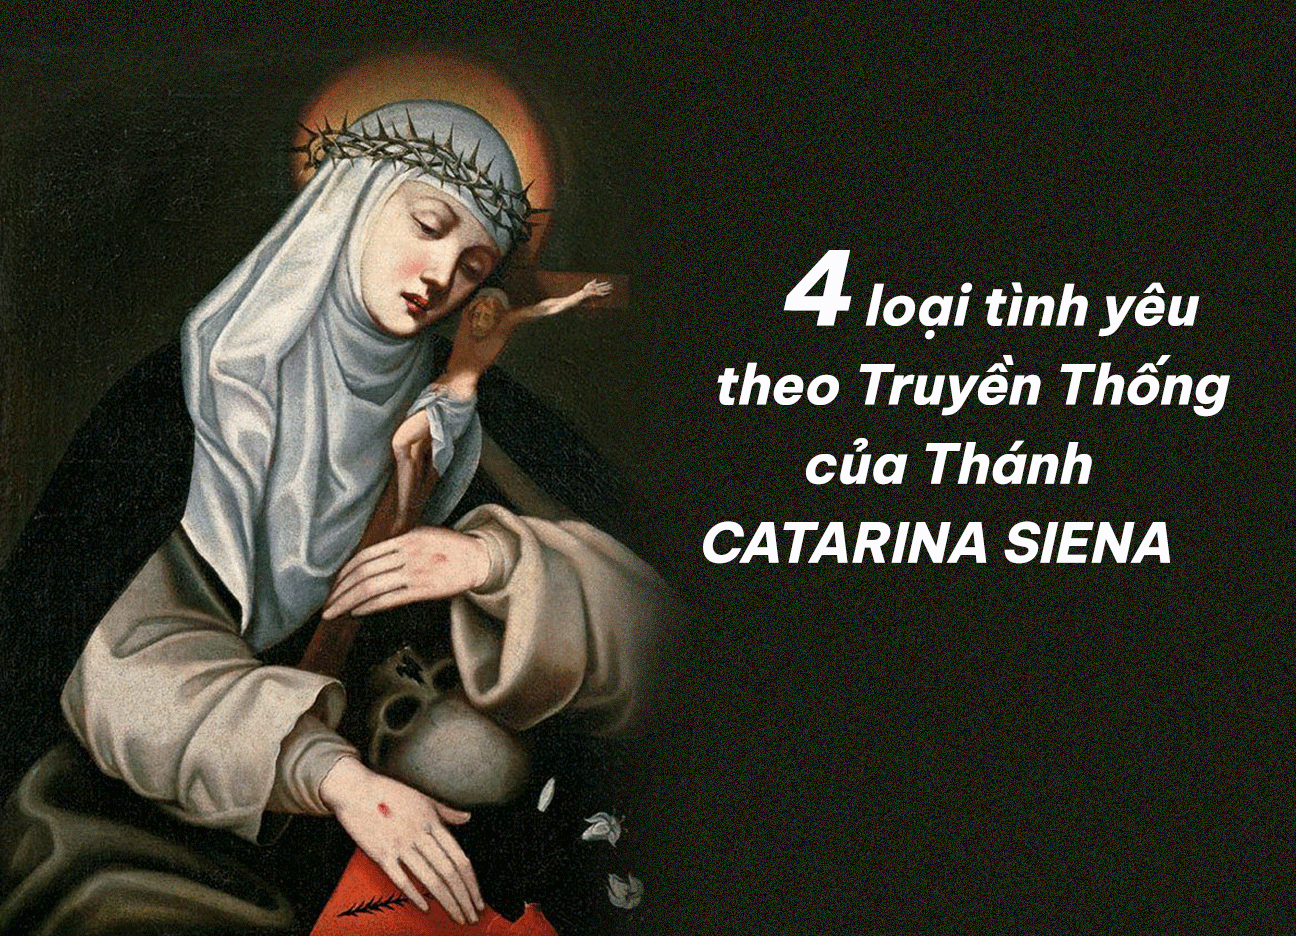 Bốn loại tình yêu theo Truyền Thống của Thánh Catarina Siena